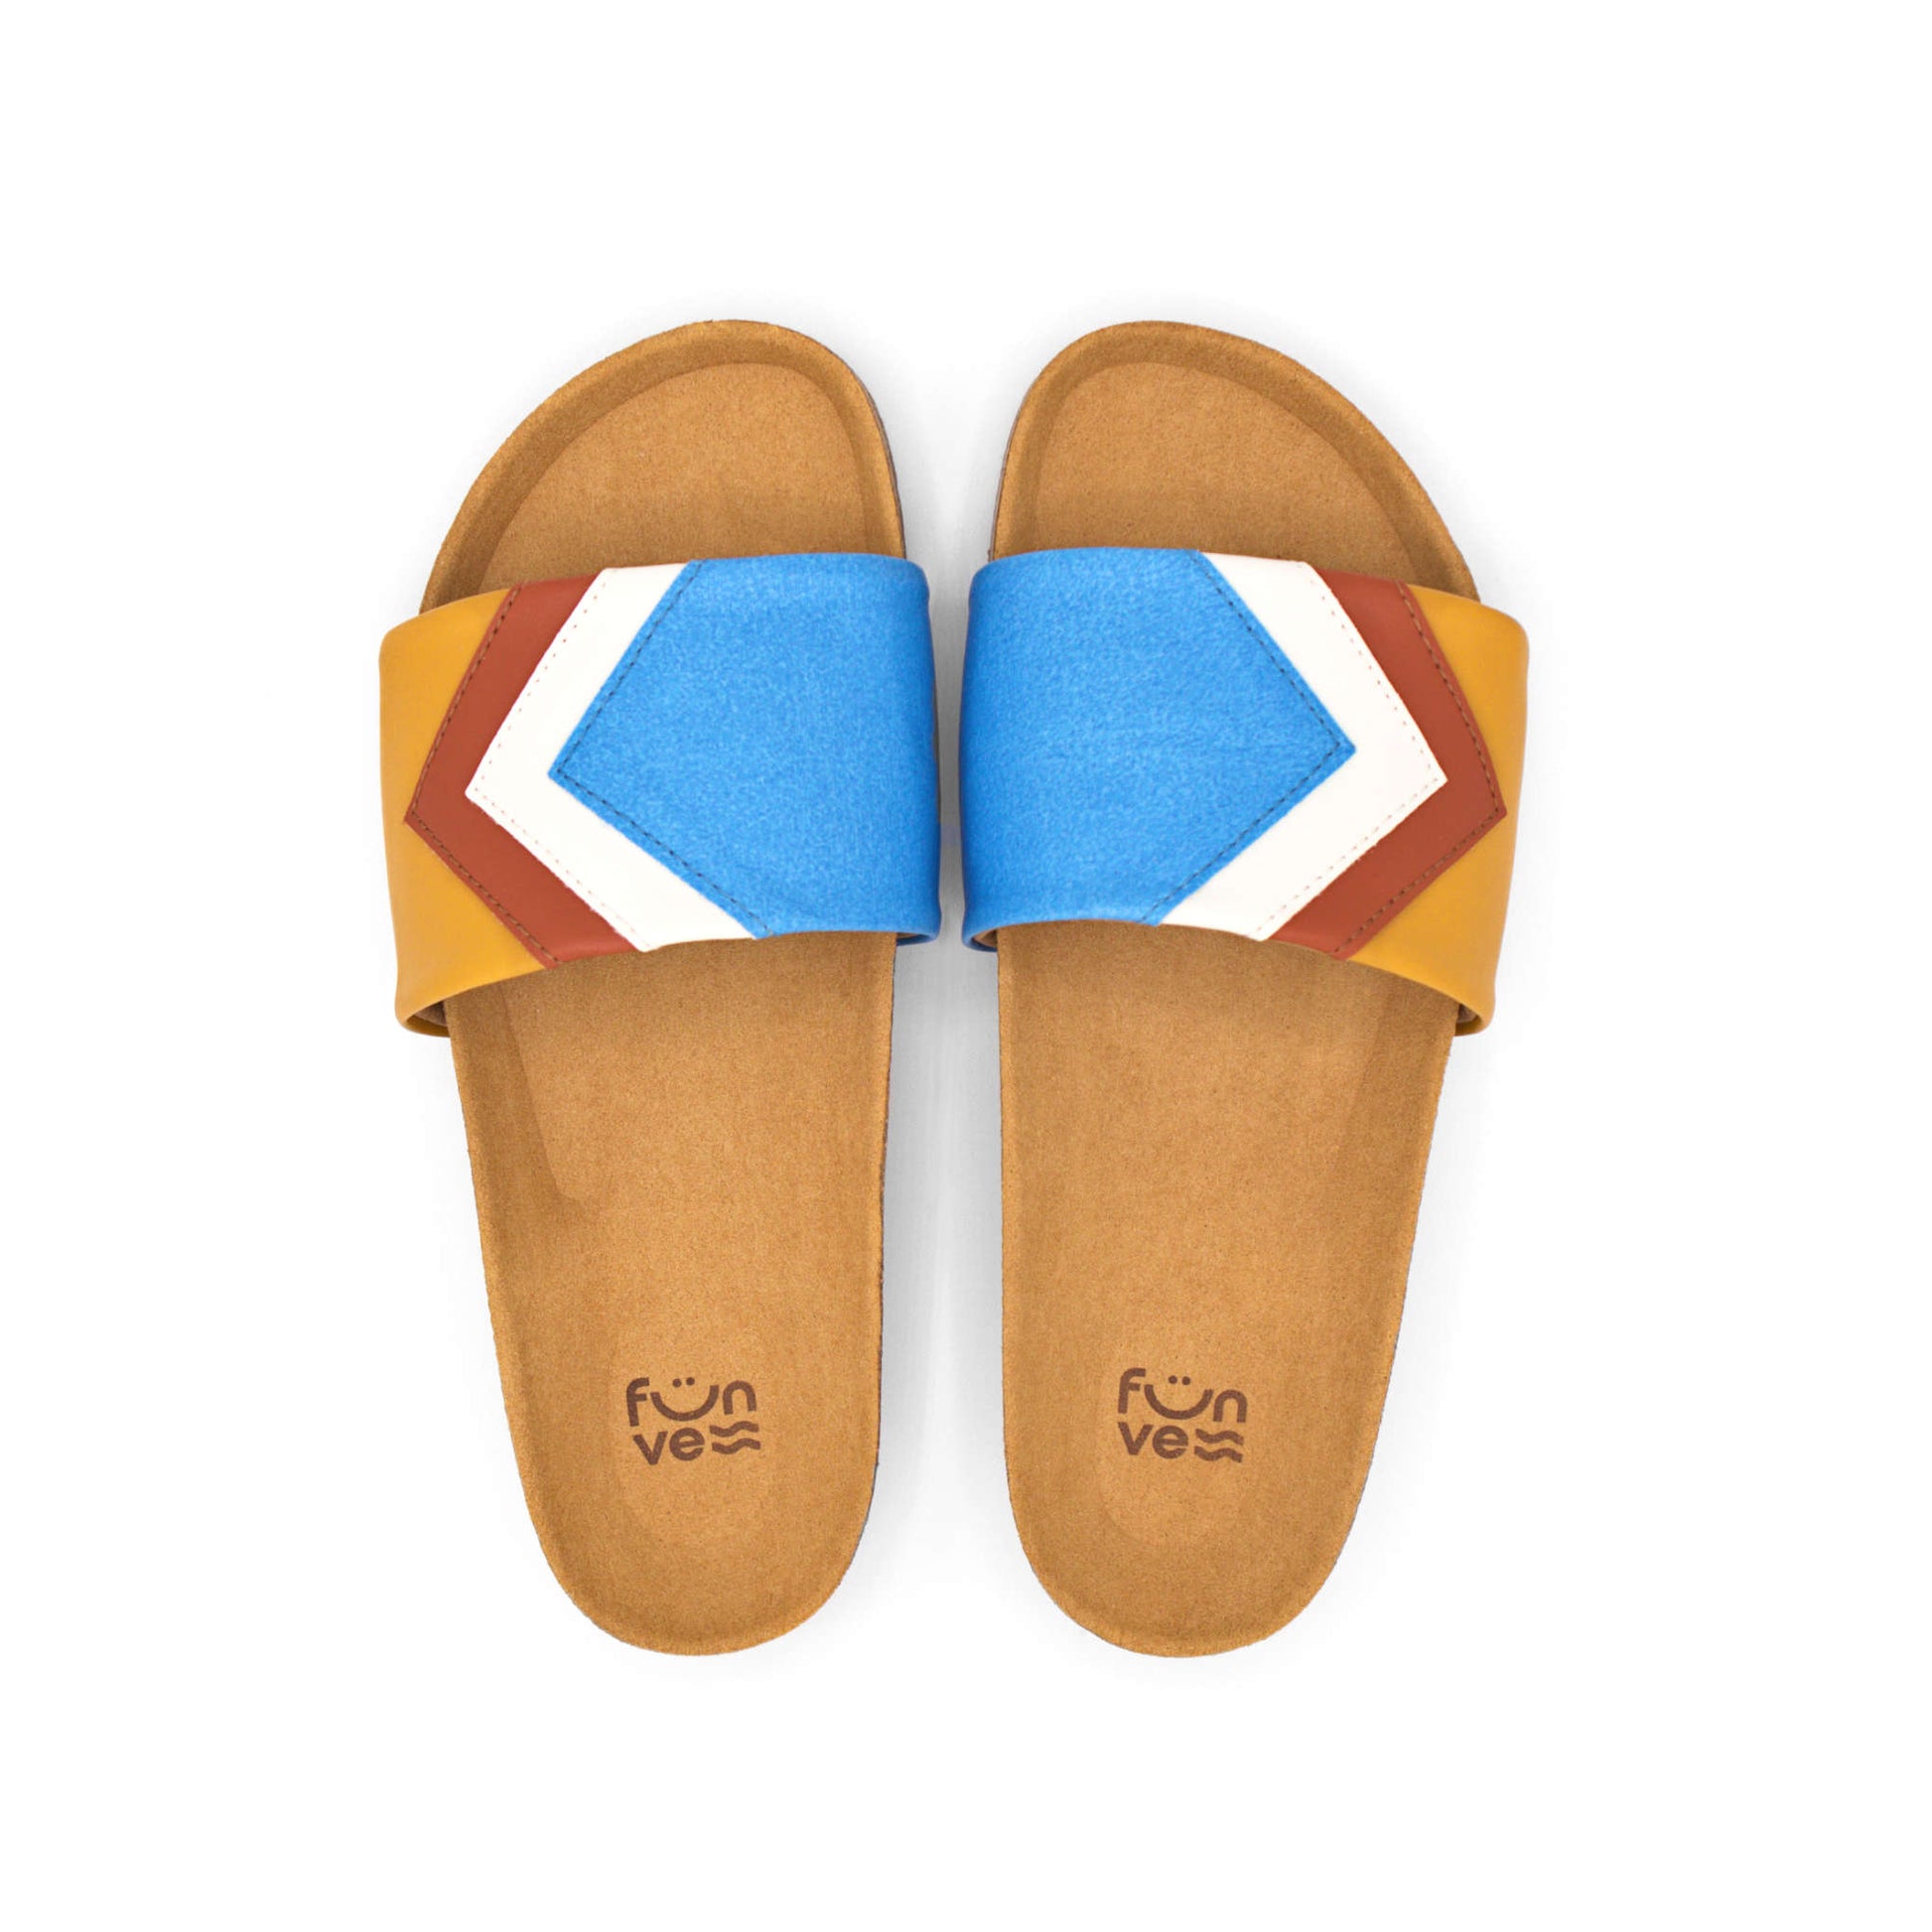 Blaue Sandalen, vegan mit Fußbett, Farben Azur, Weiß, Rust, Senf; Marke Fünve, Modell Sky, Birdseye